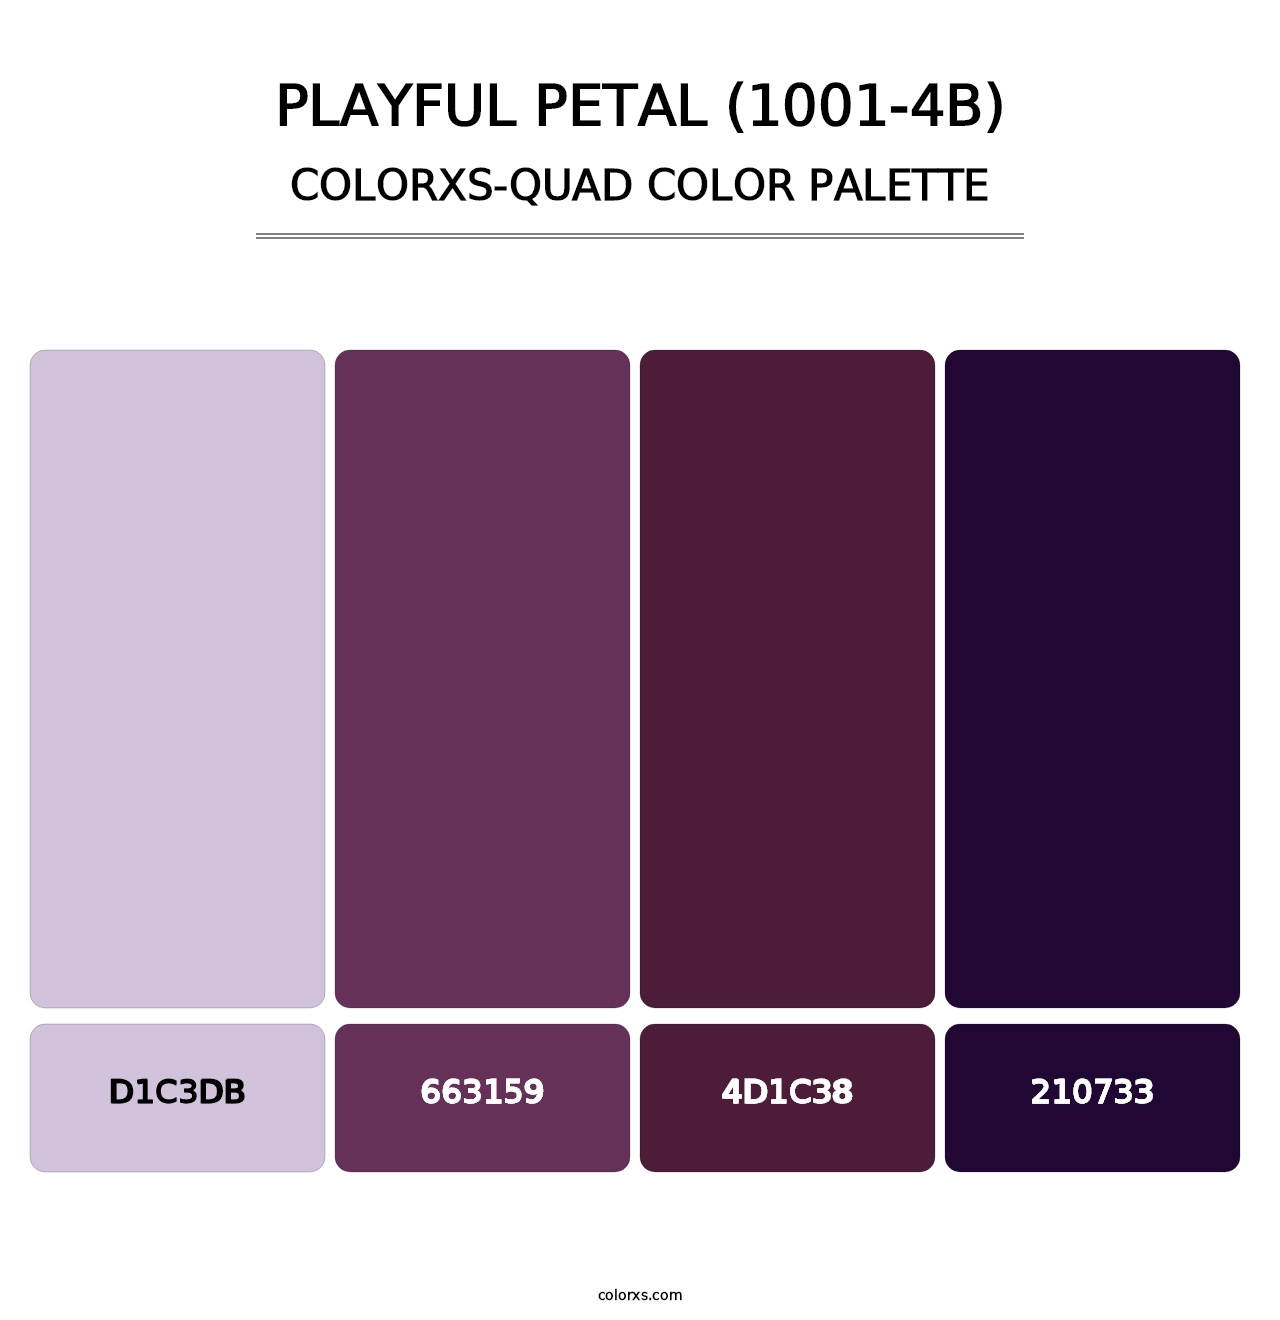 Playful Petal (1001-4B) - Colorxs Quad Palette